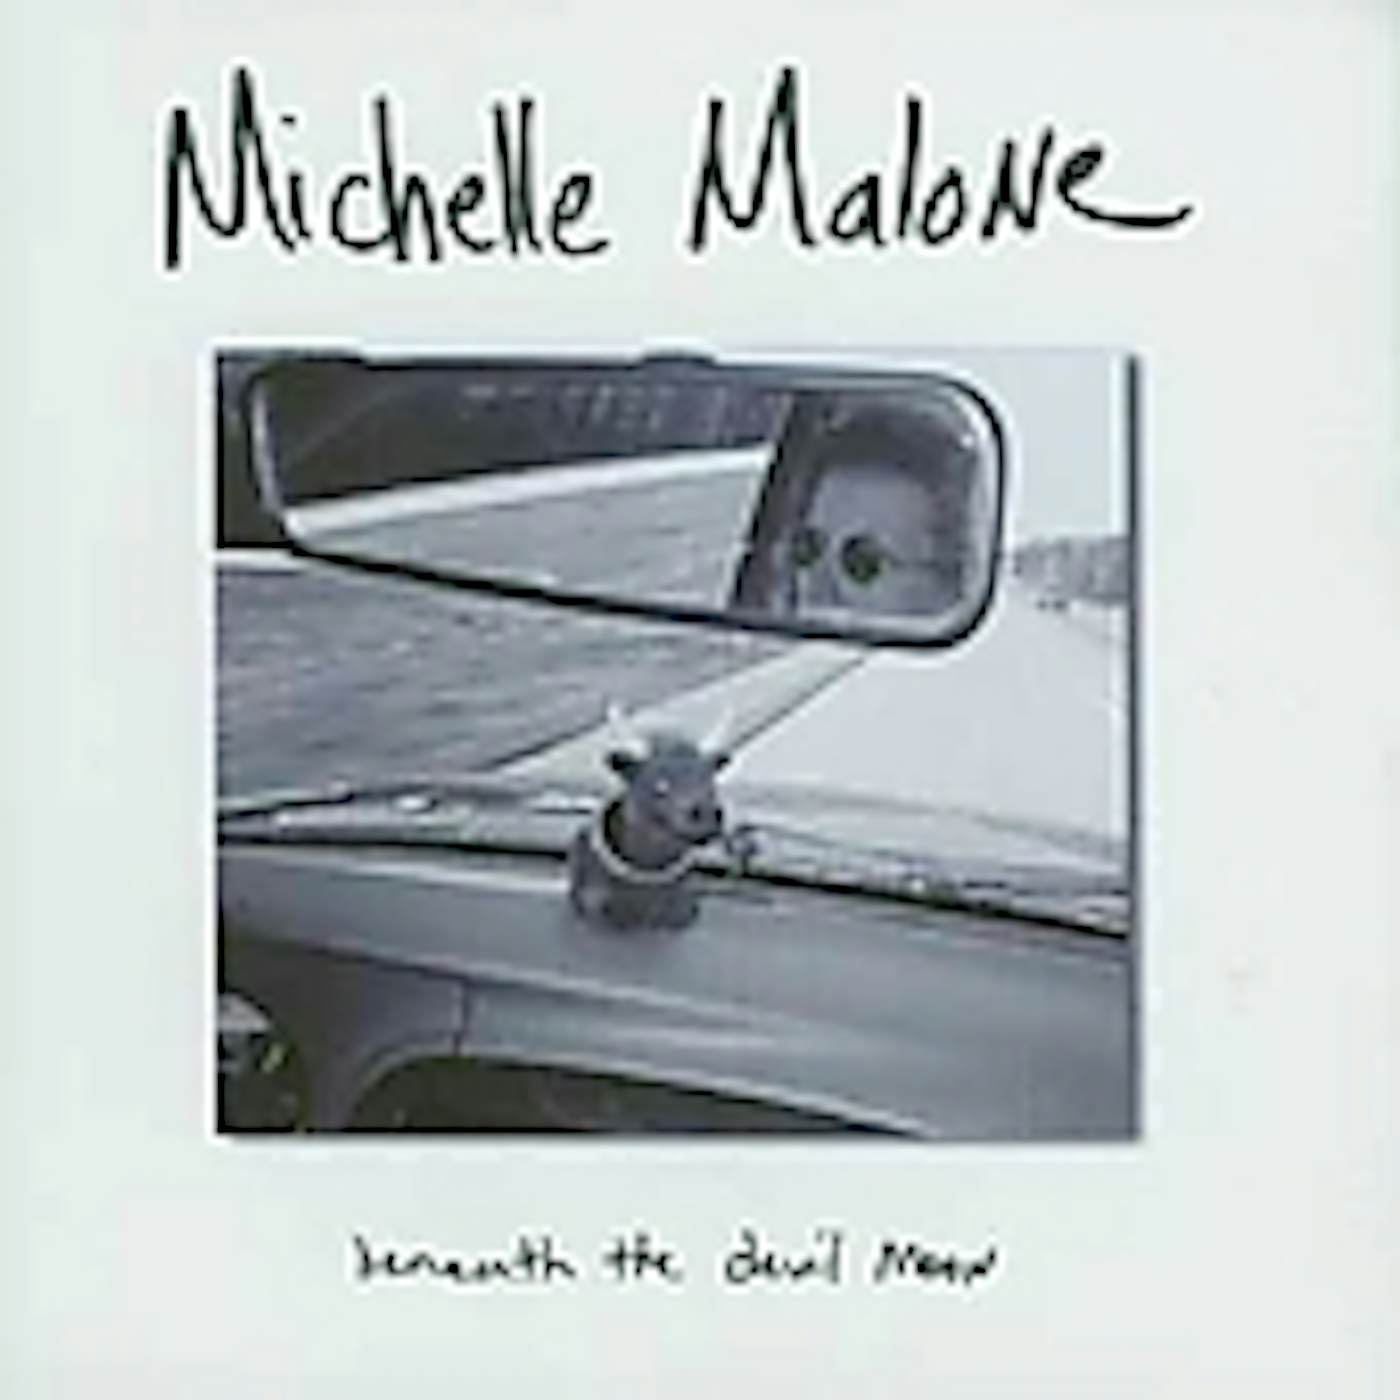 Michelle Malone BENEATH THE DEVIL MOON CD